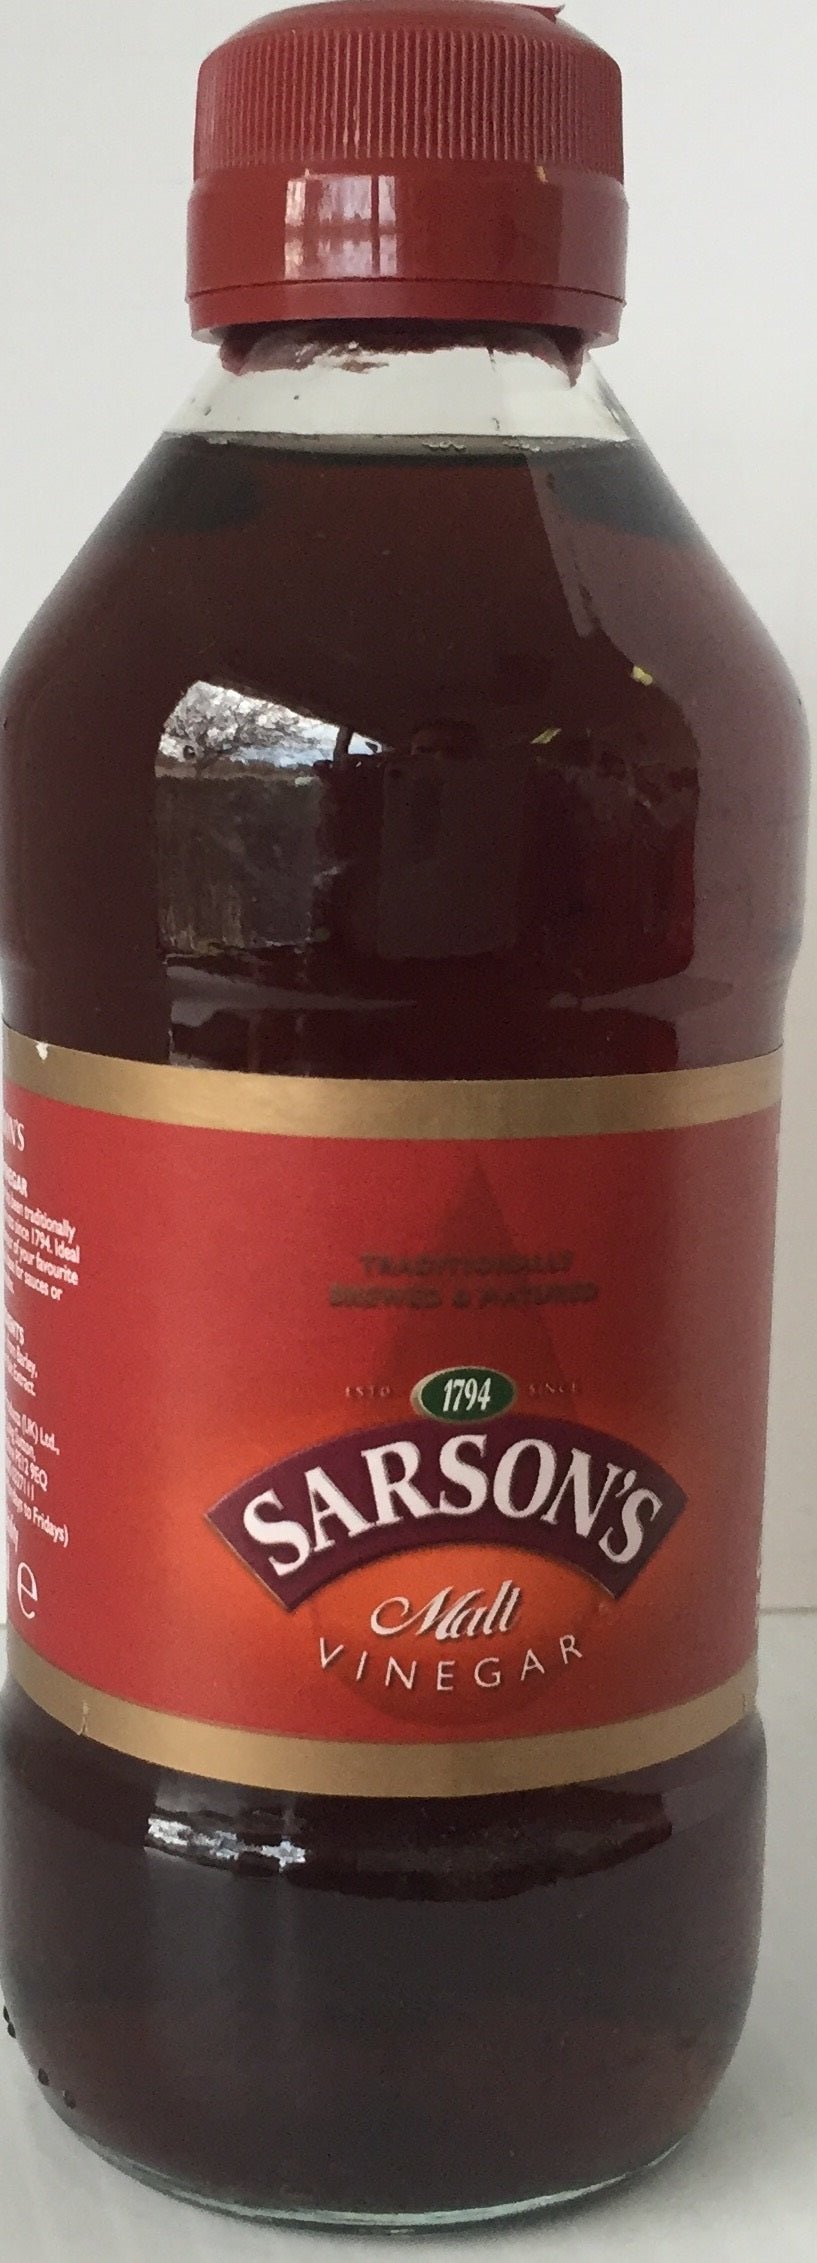 Sarsons Malt Vinegar bottle 250ml x 12